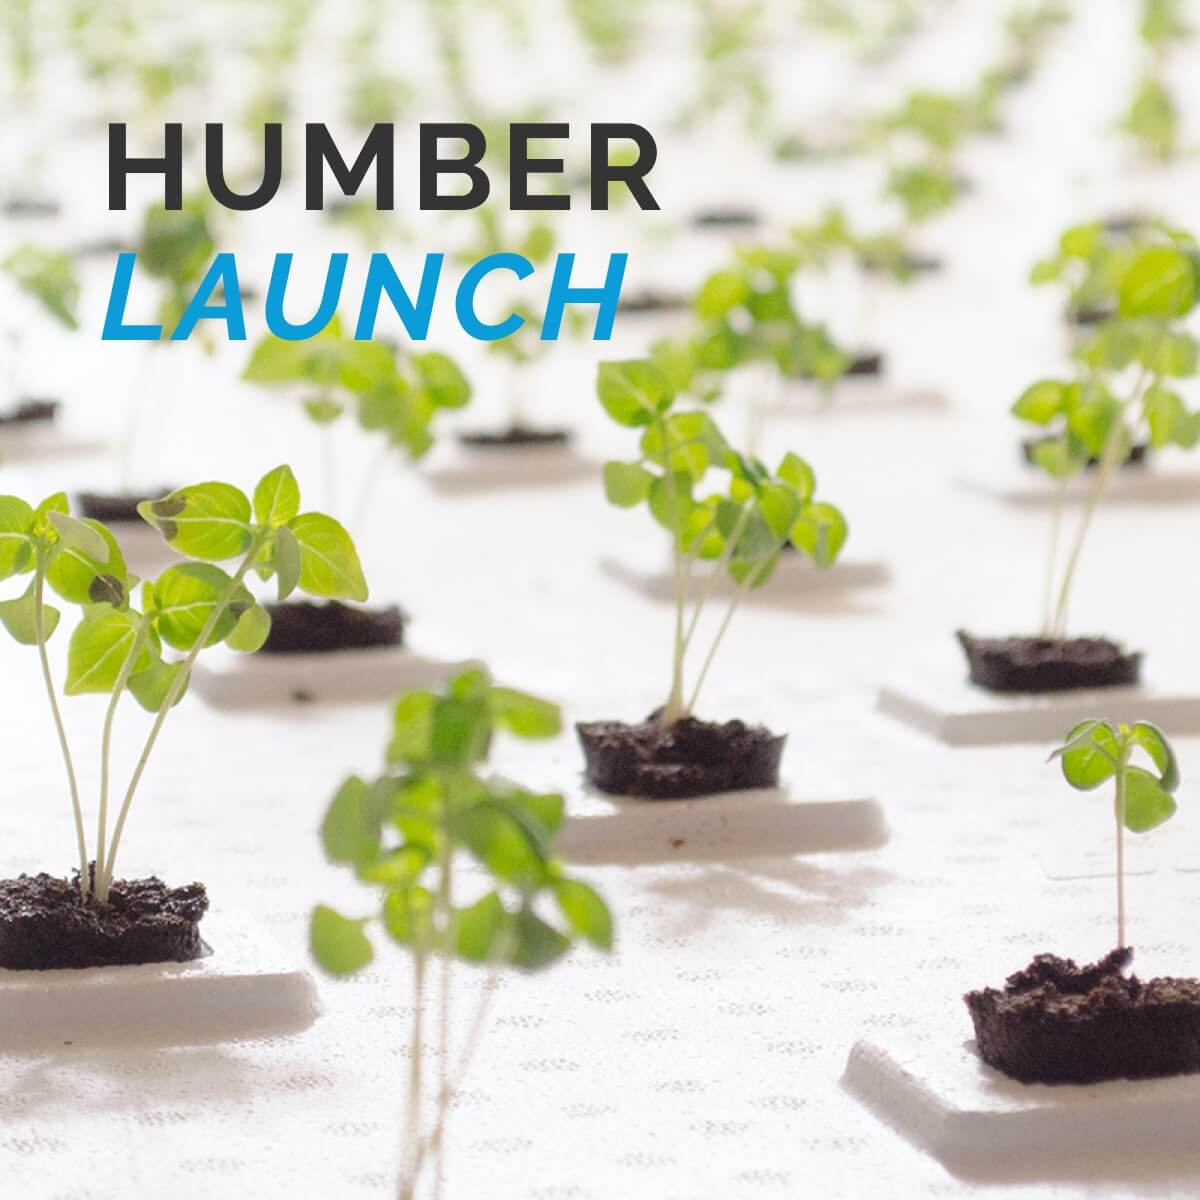 Humber Launch branding